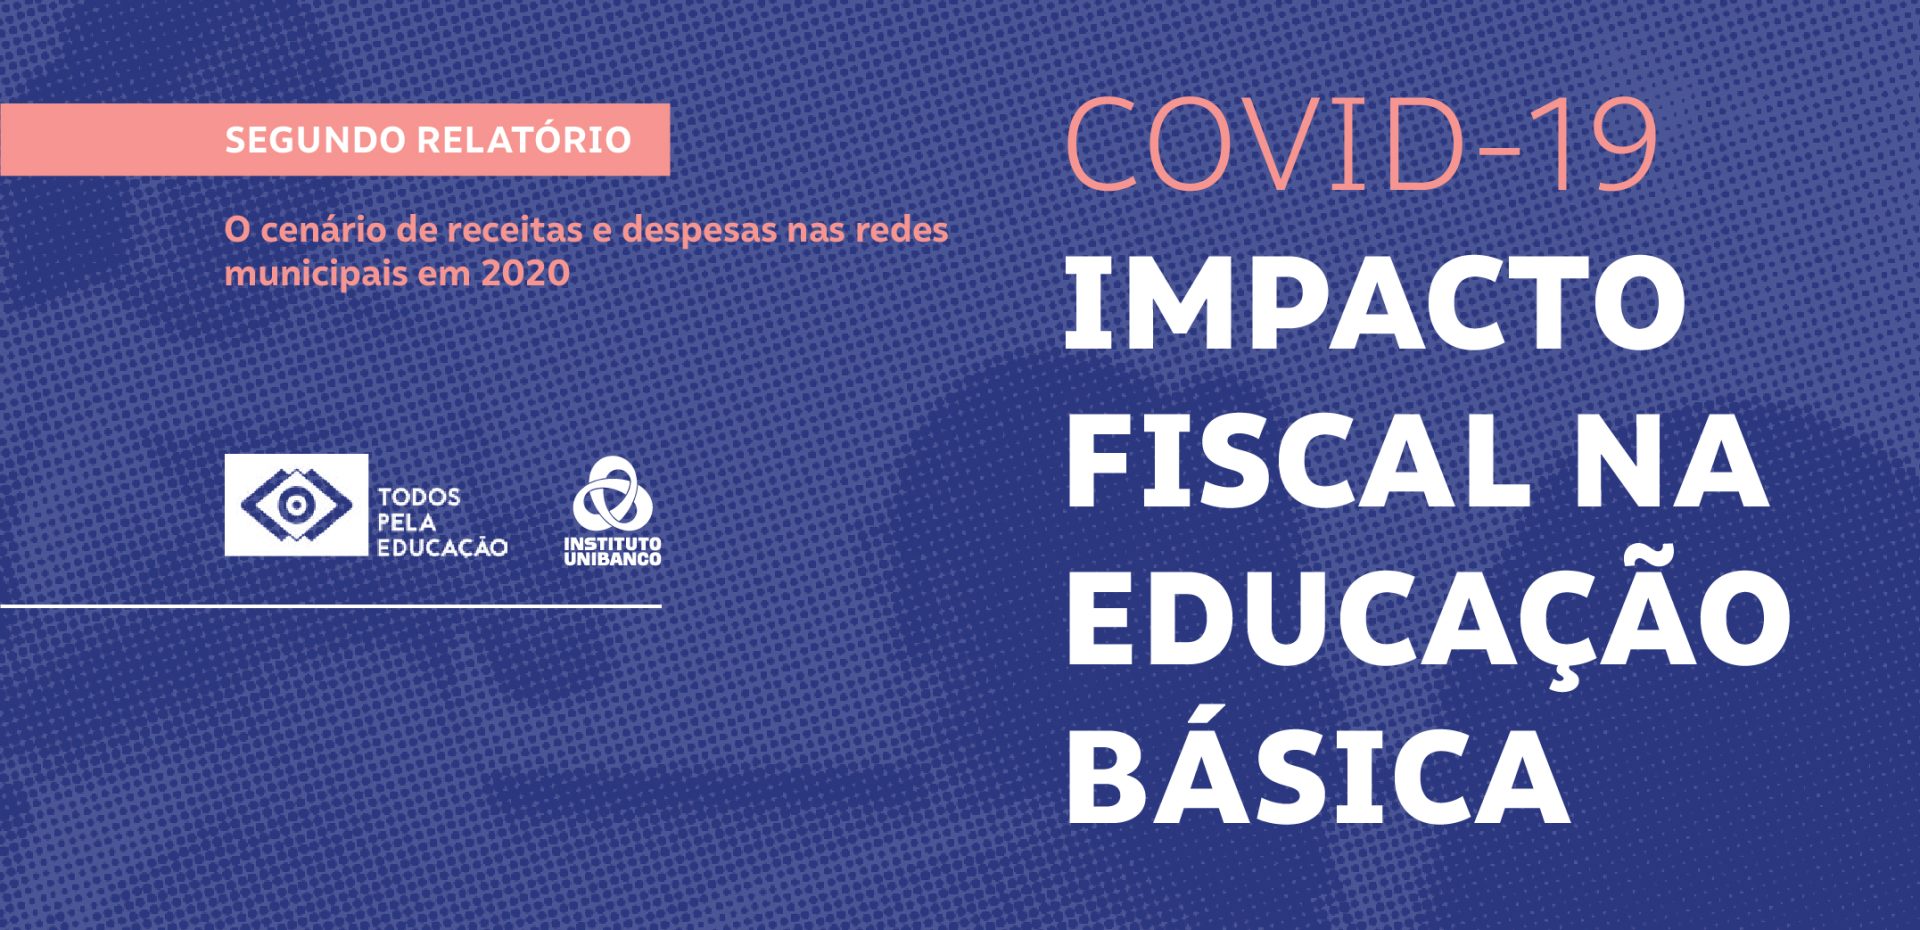 Instituto Unibanco e Todos pela Educação lançam segundo volume de estudo sobre impacto fiscal da COVID-19 na educação brasileira